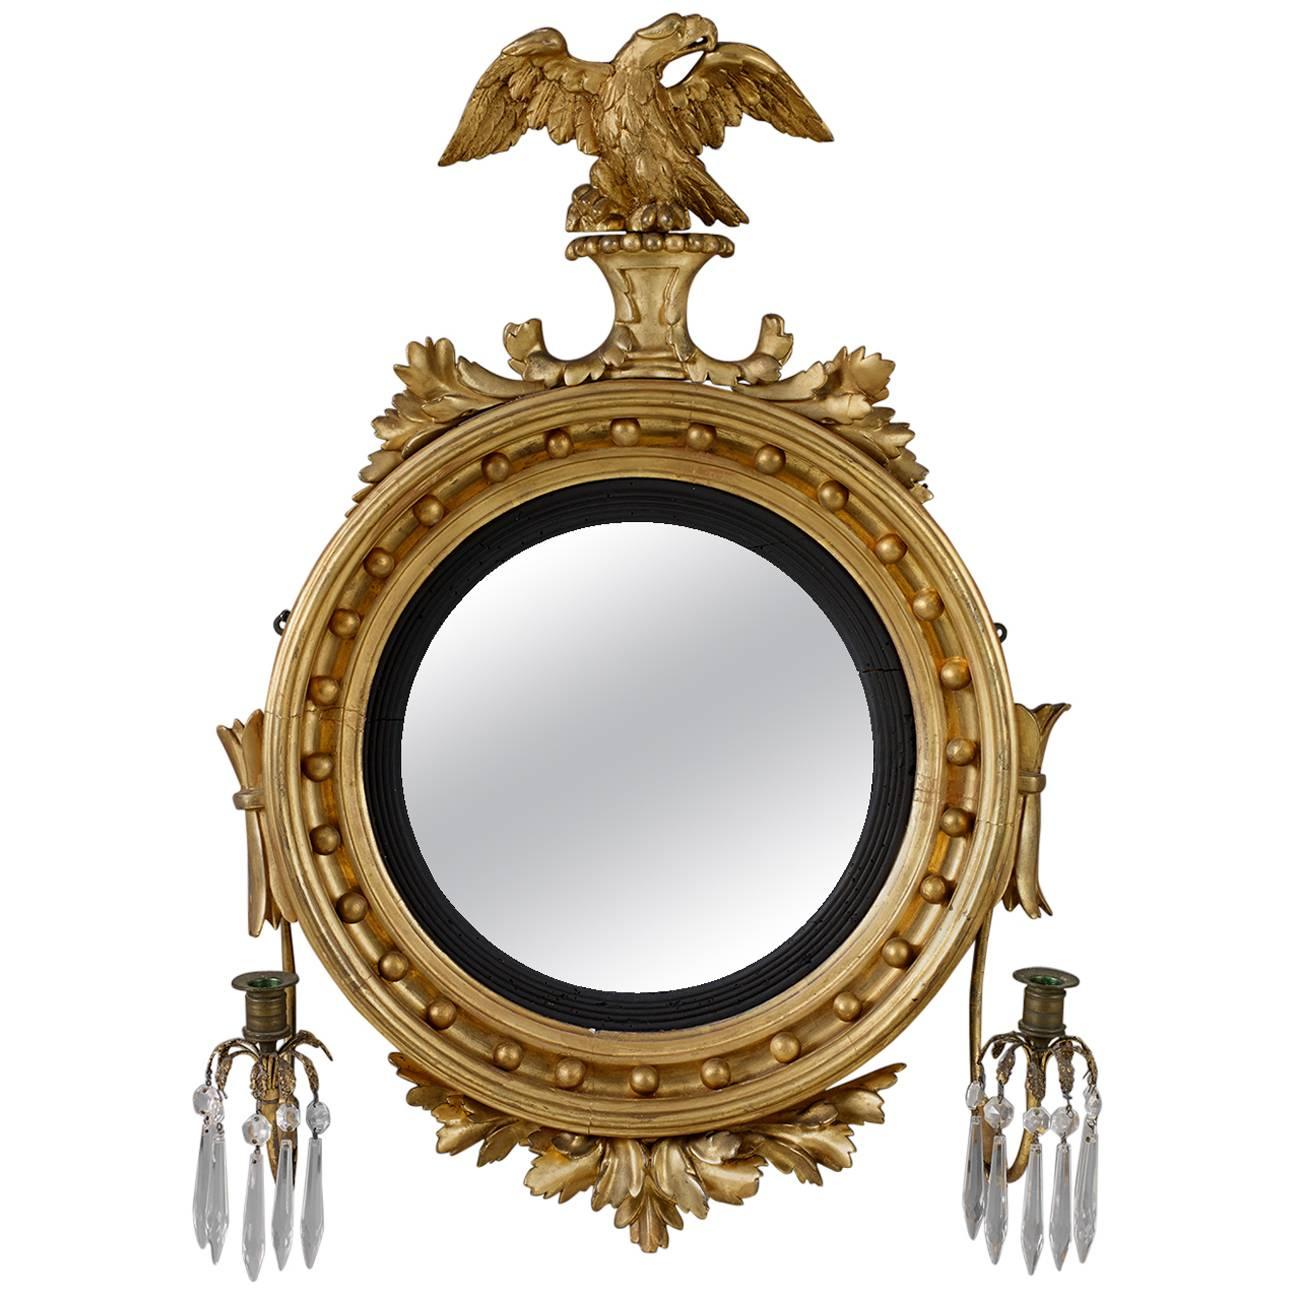 Rare Diminutive Size Girandole Mirror For Sale